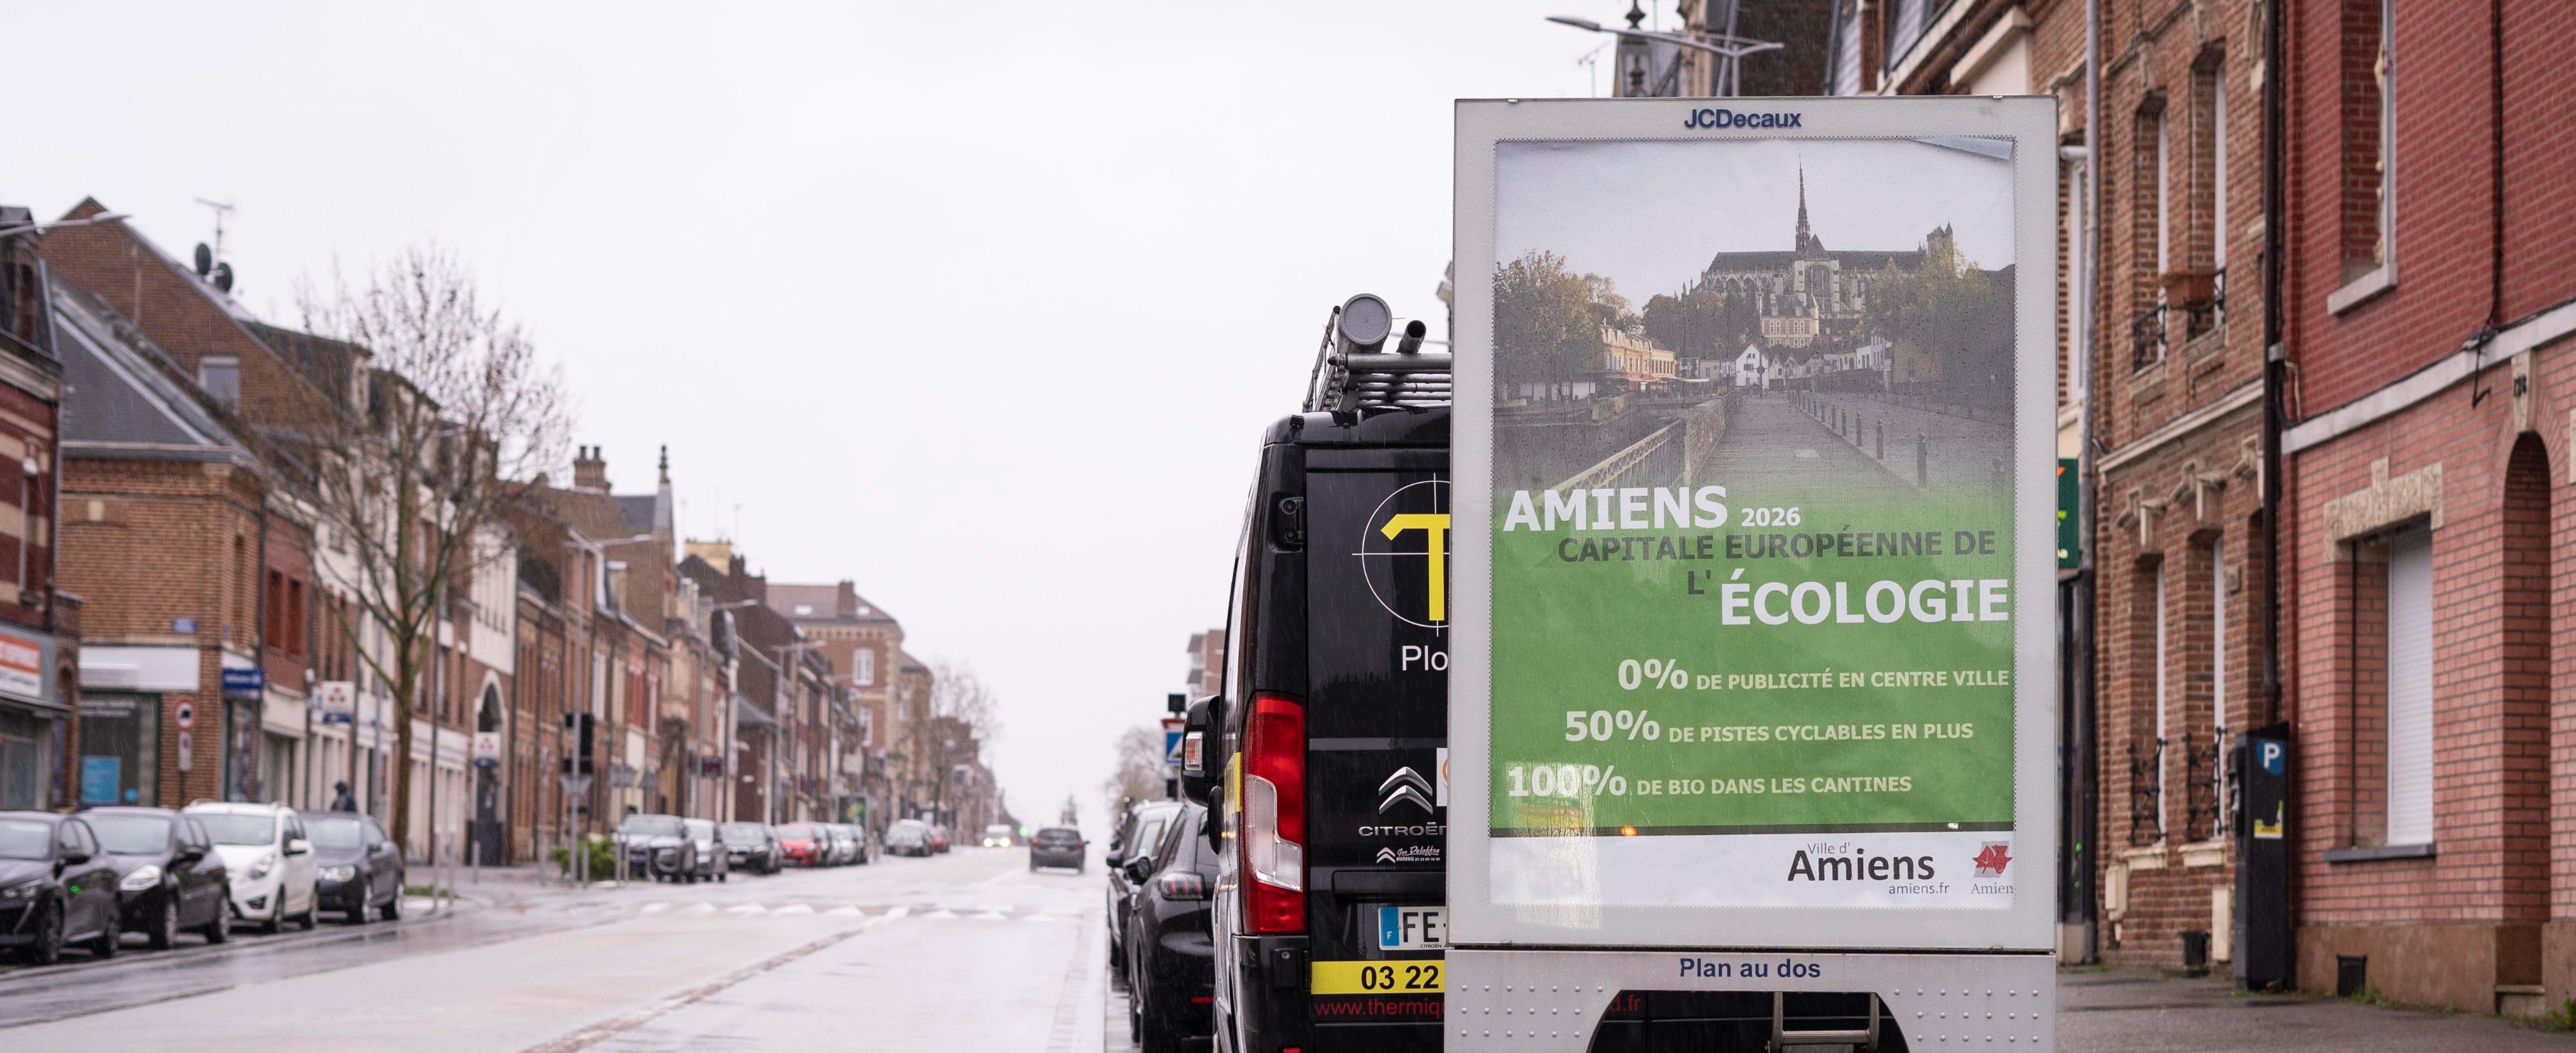 Campagne publicitaire à Amiens